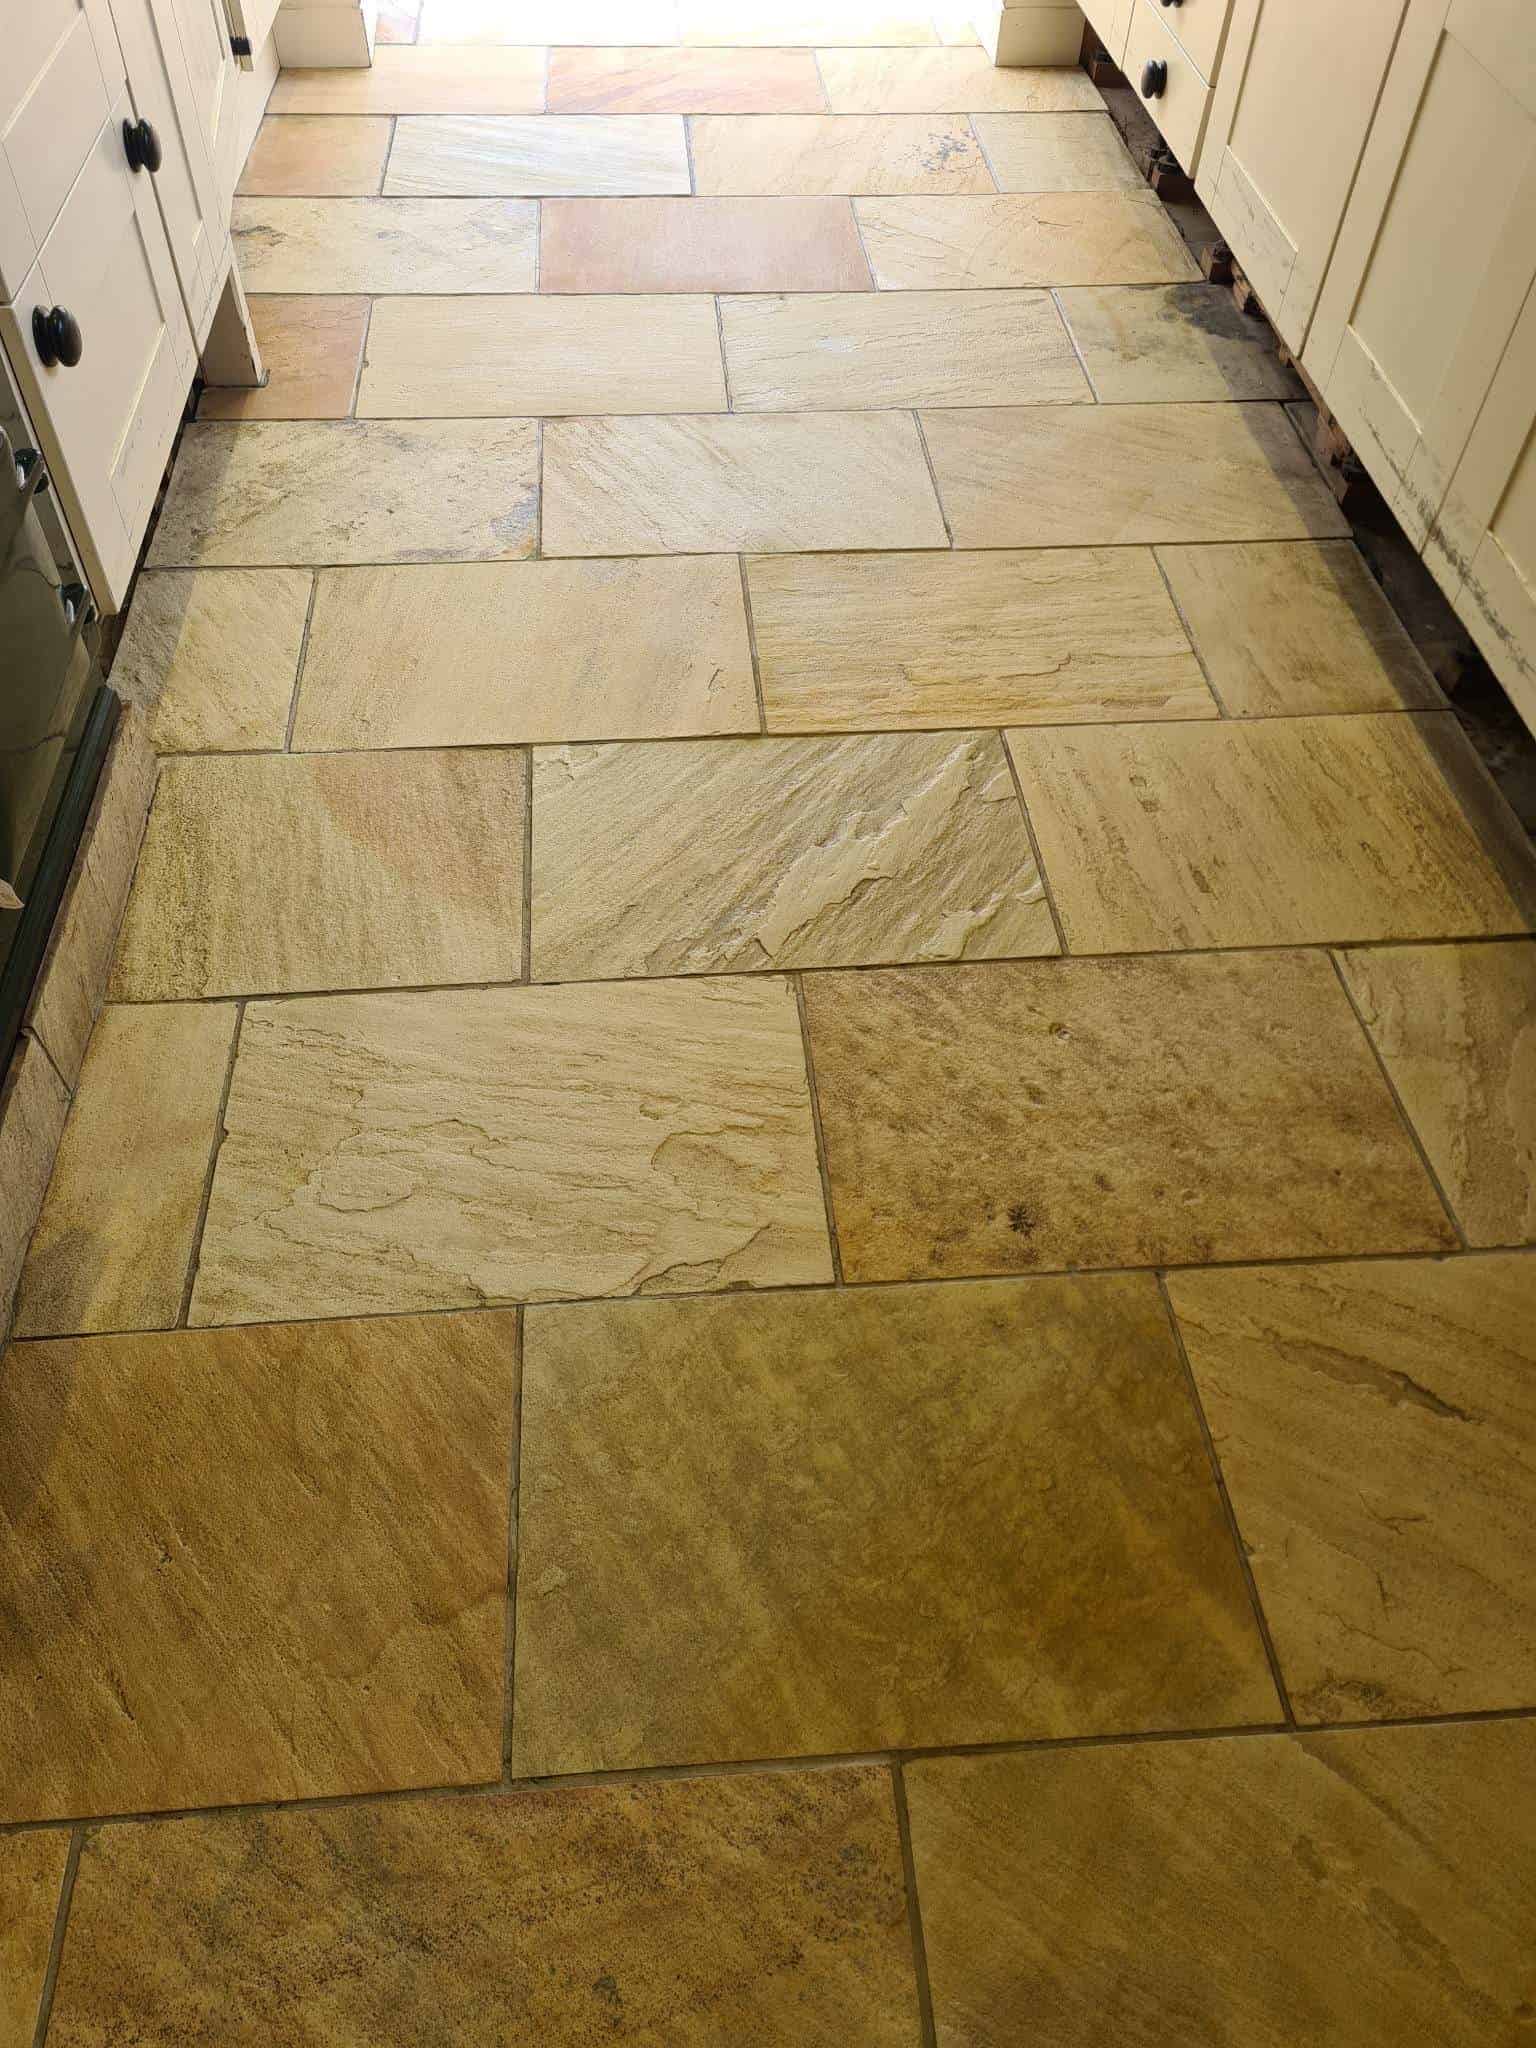 Sandstone Kitchen Floor After Cleaning Ipswich